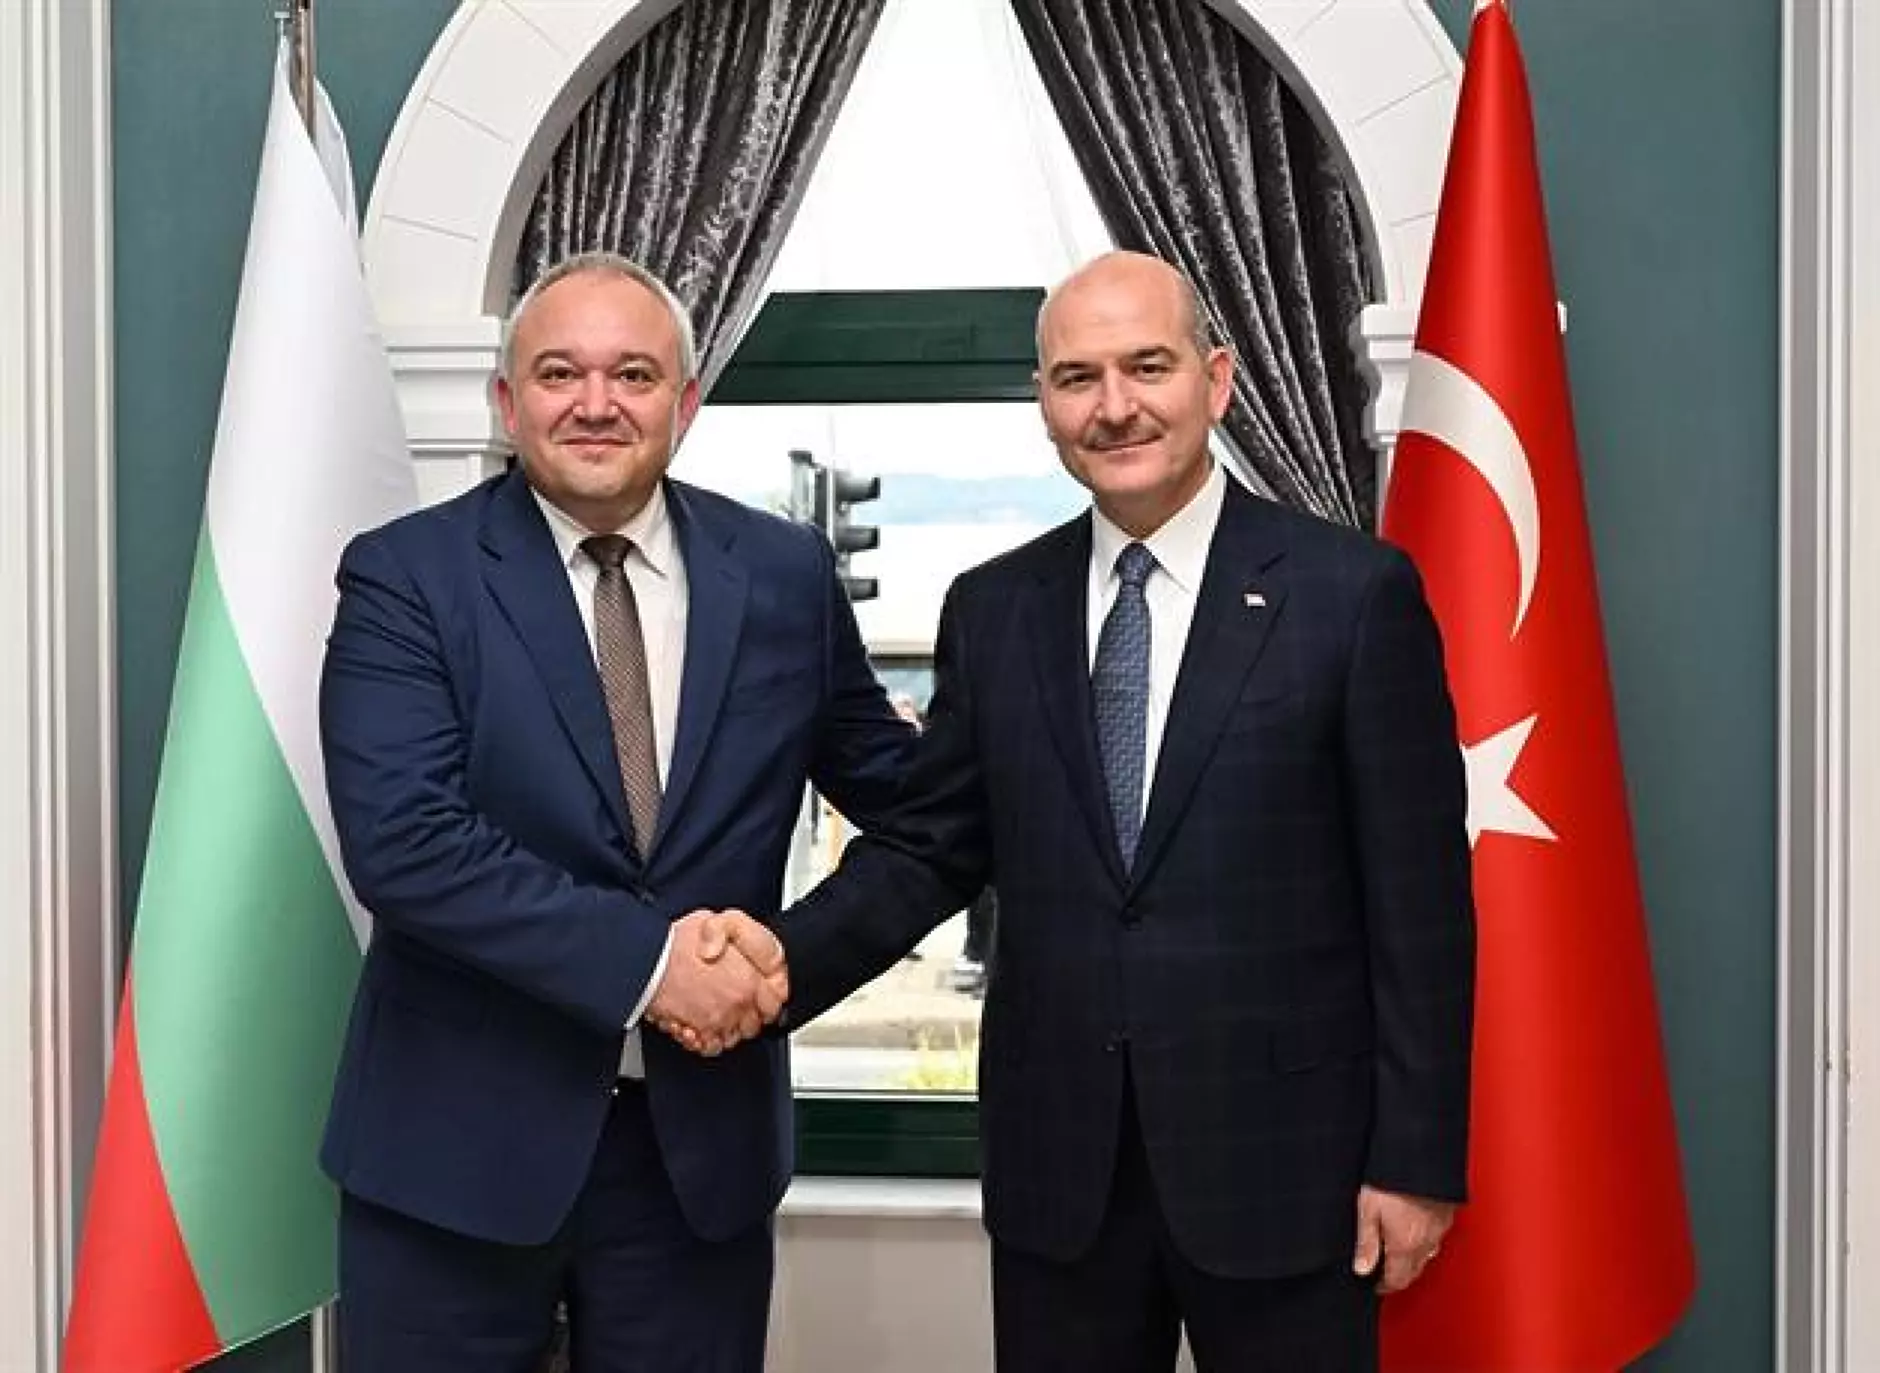 Министрите на вътрешните работи на България и Турция проведоха работна среща в Истанбул